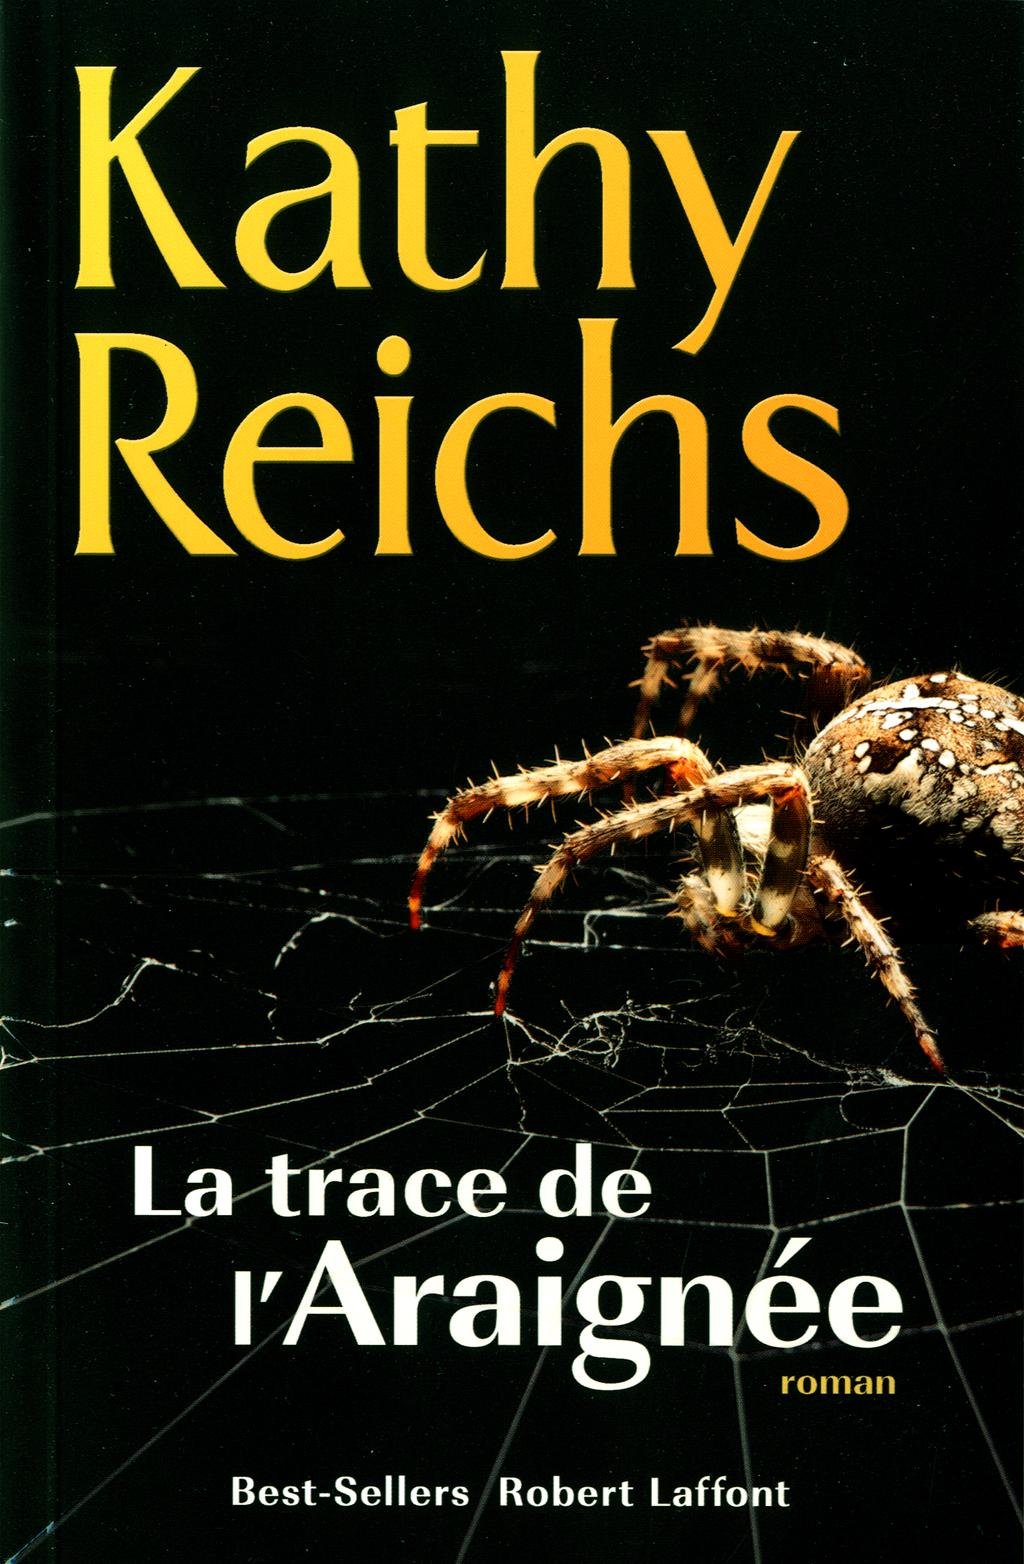 La trace de l'araignée - Kathy Reichs